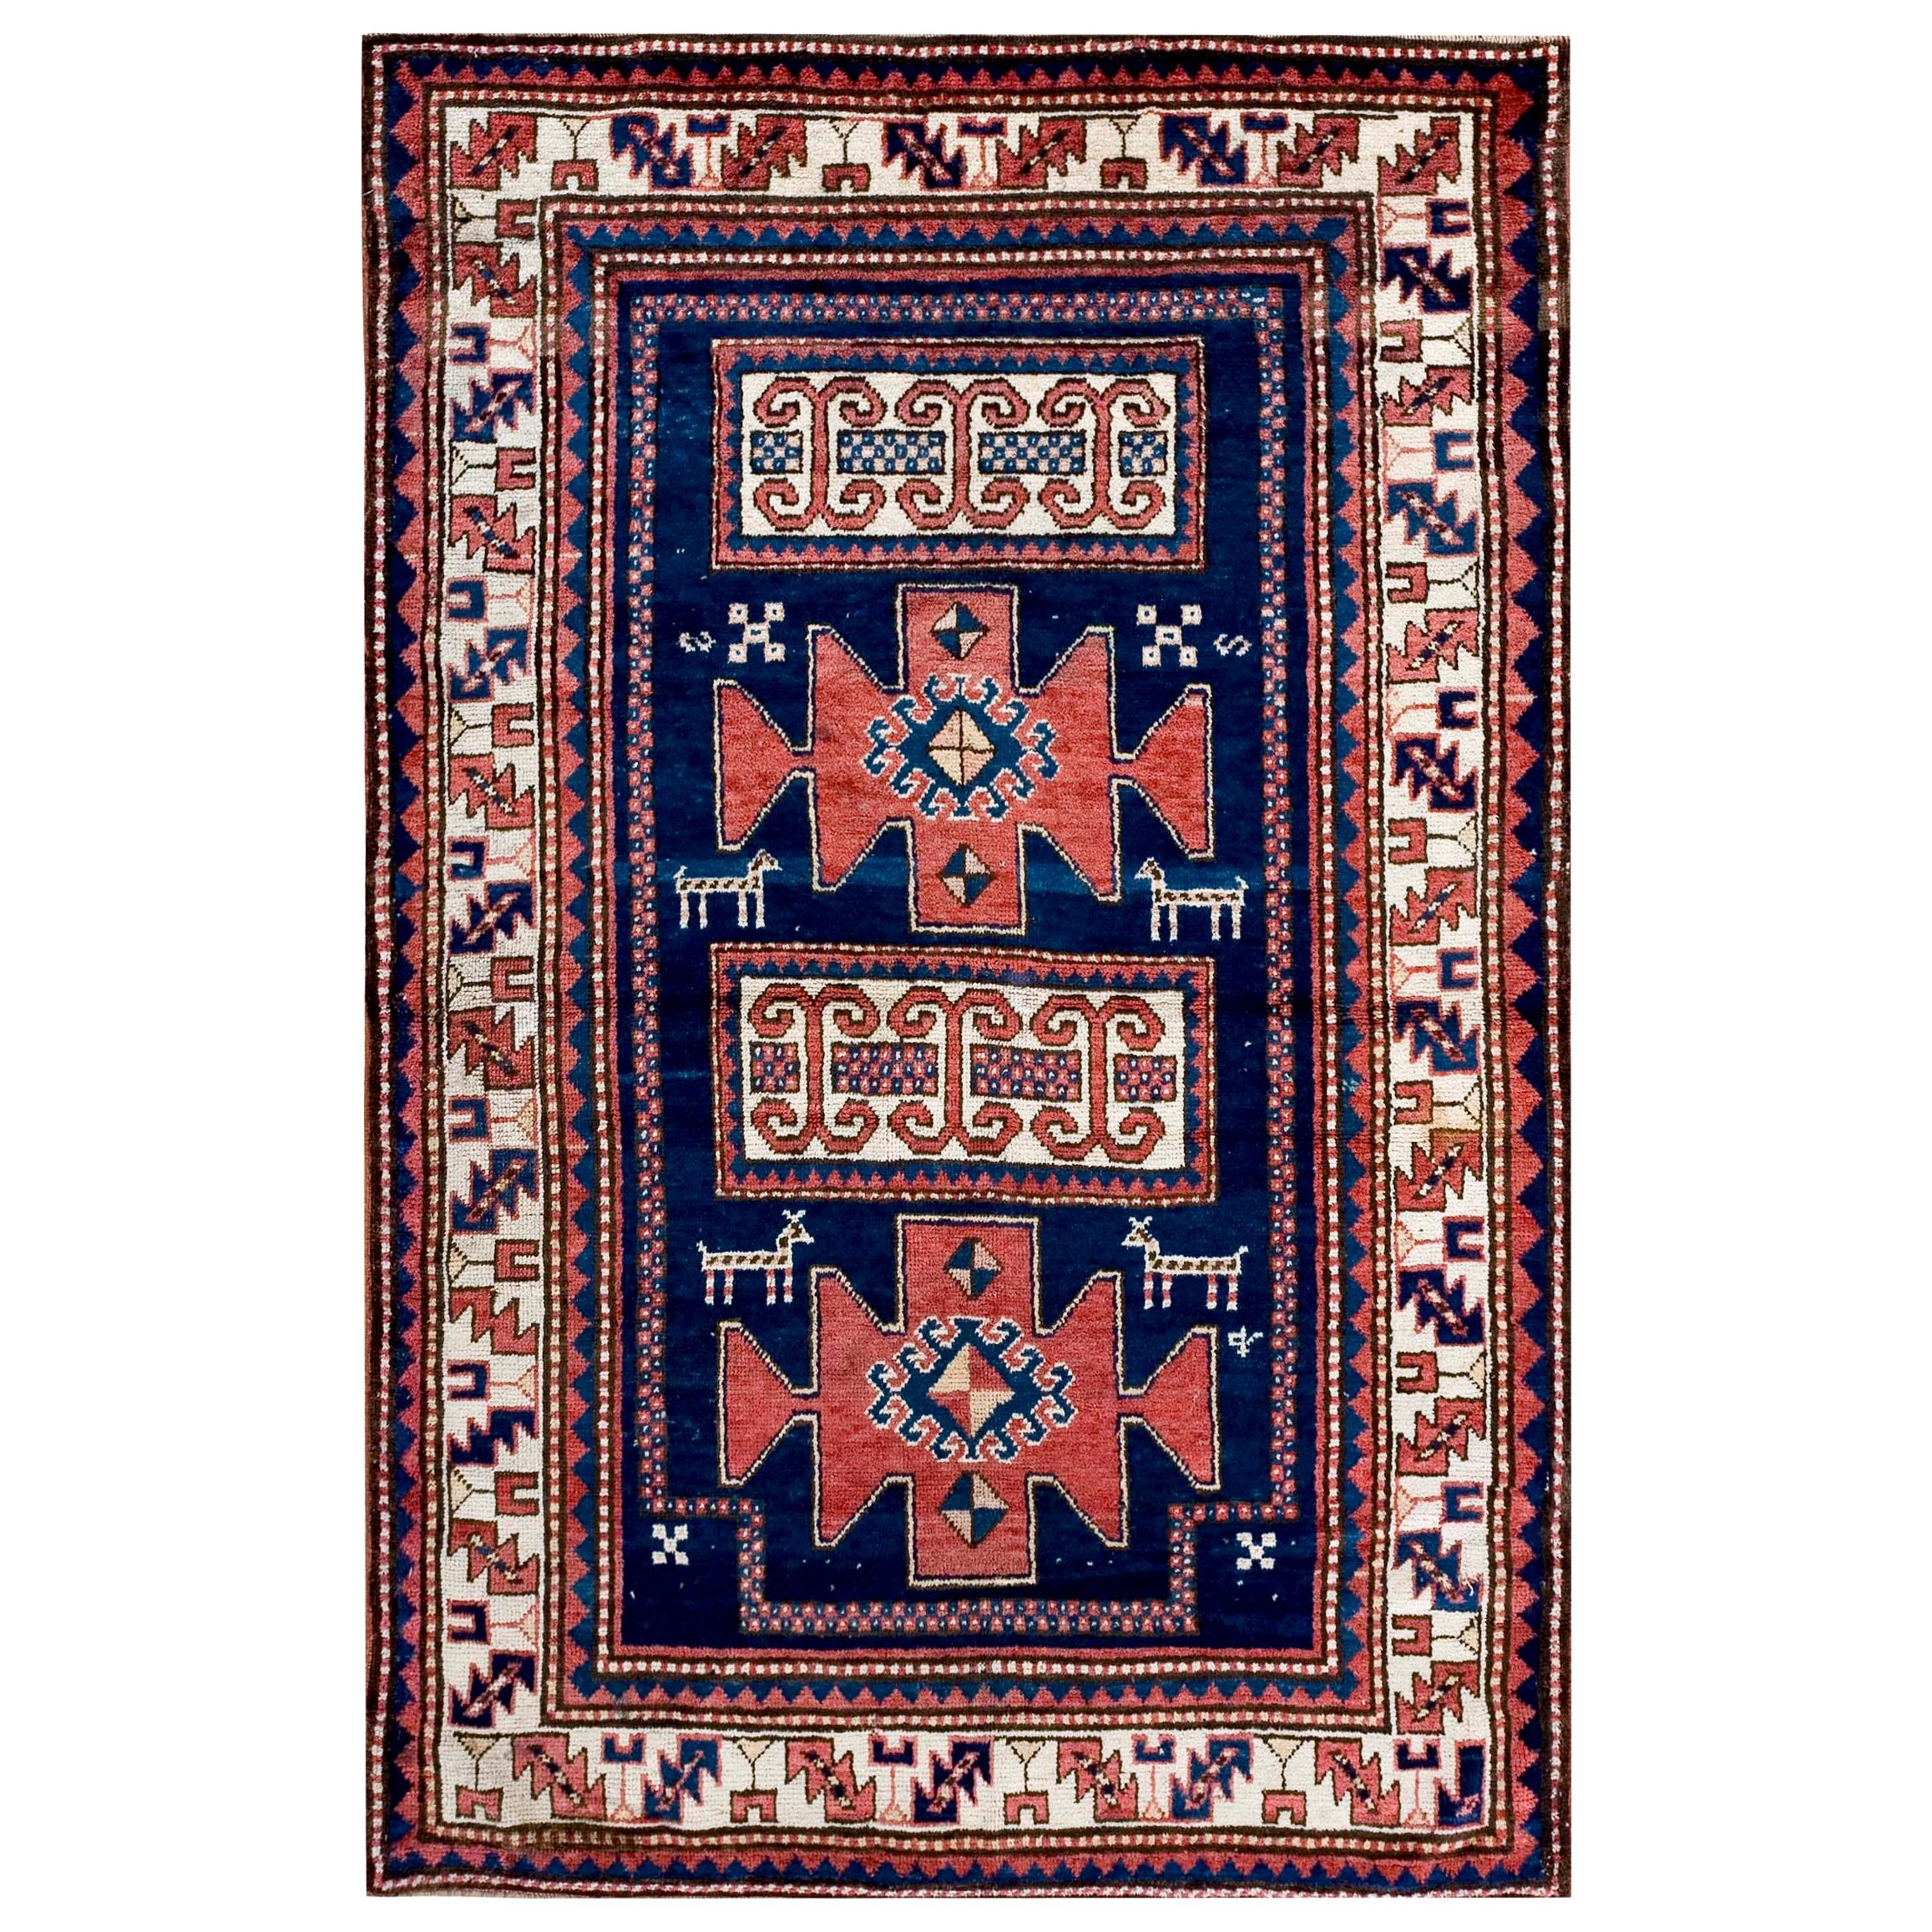 Kaukasischer Kazak-Teppich aus dem frühen 20. Jahrhundert ( 4'4" x 6'6" - 132 x 198 )